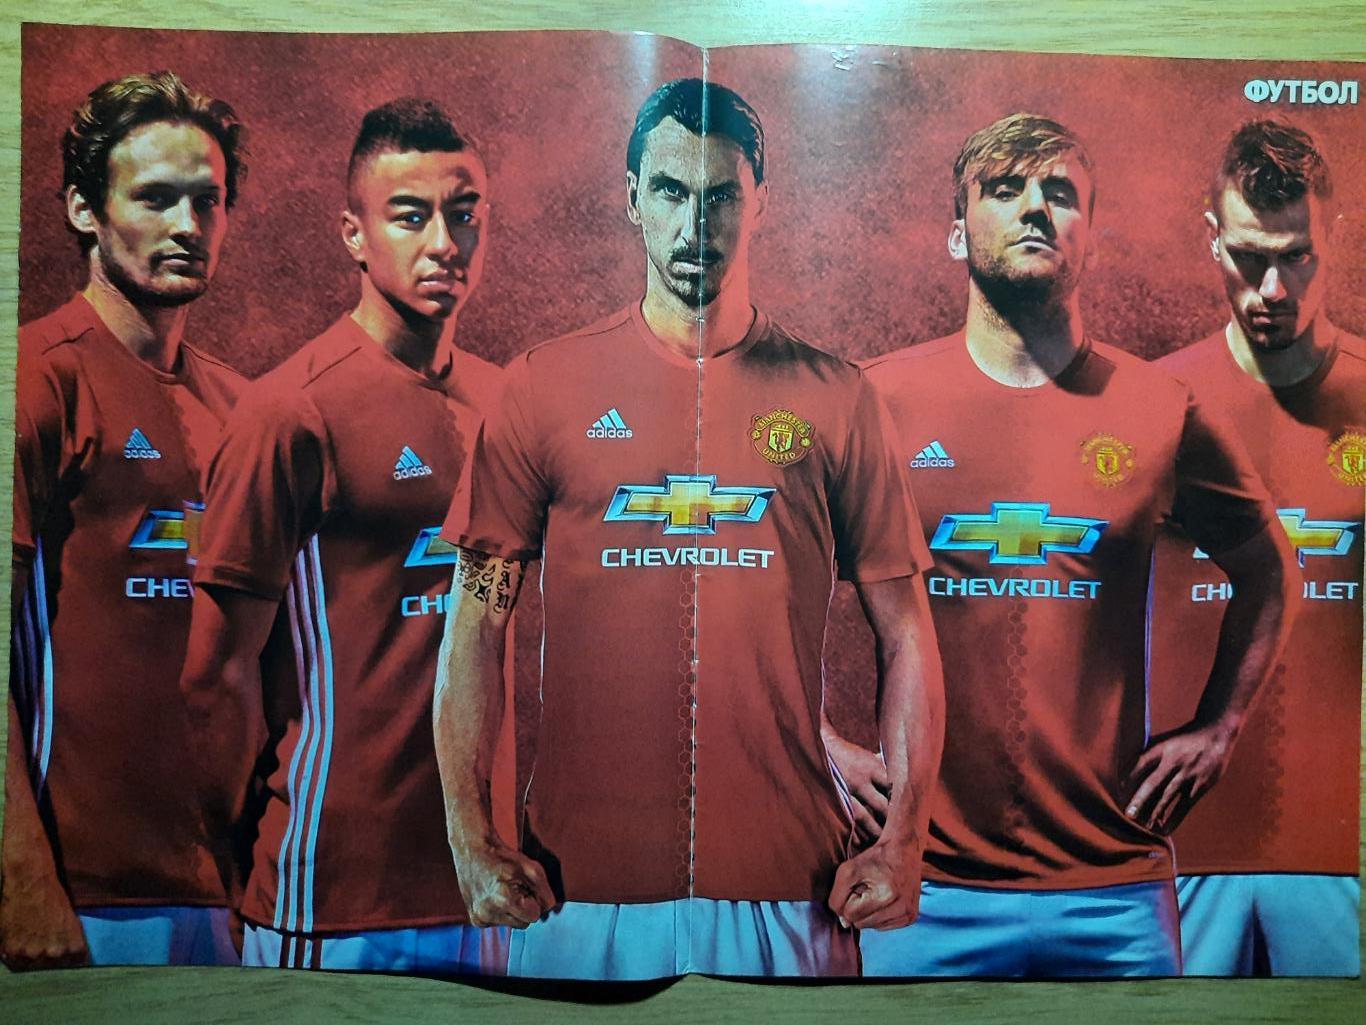 постер из еженедельника Футбол #59 2016, Манчестер Юнайтед.